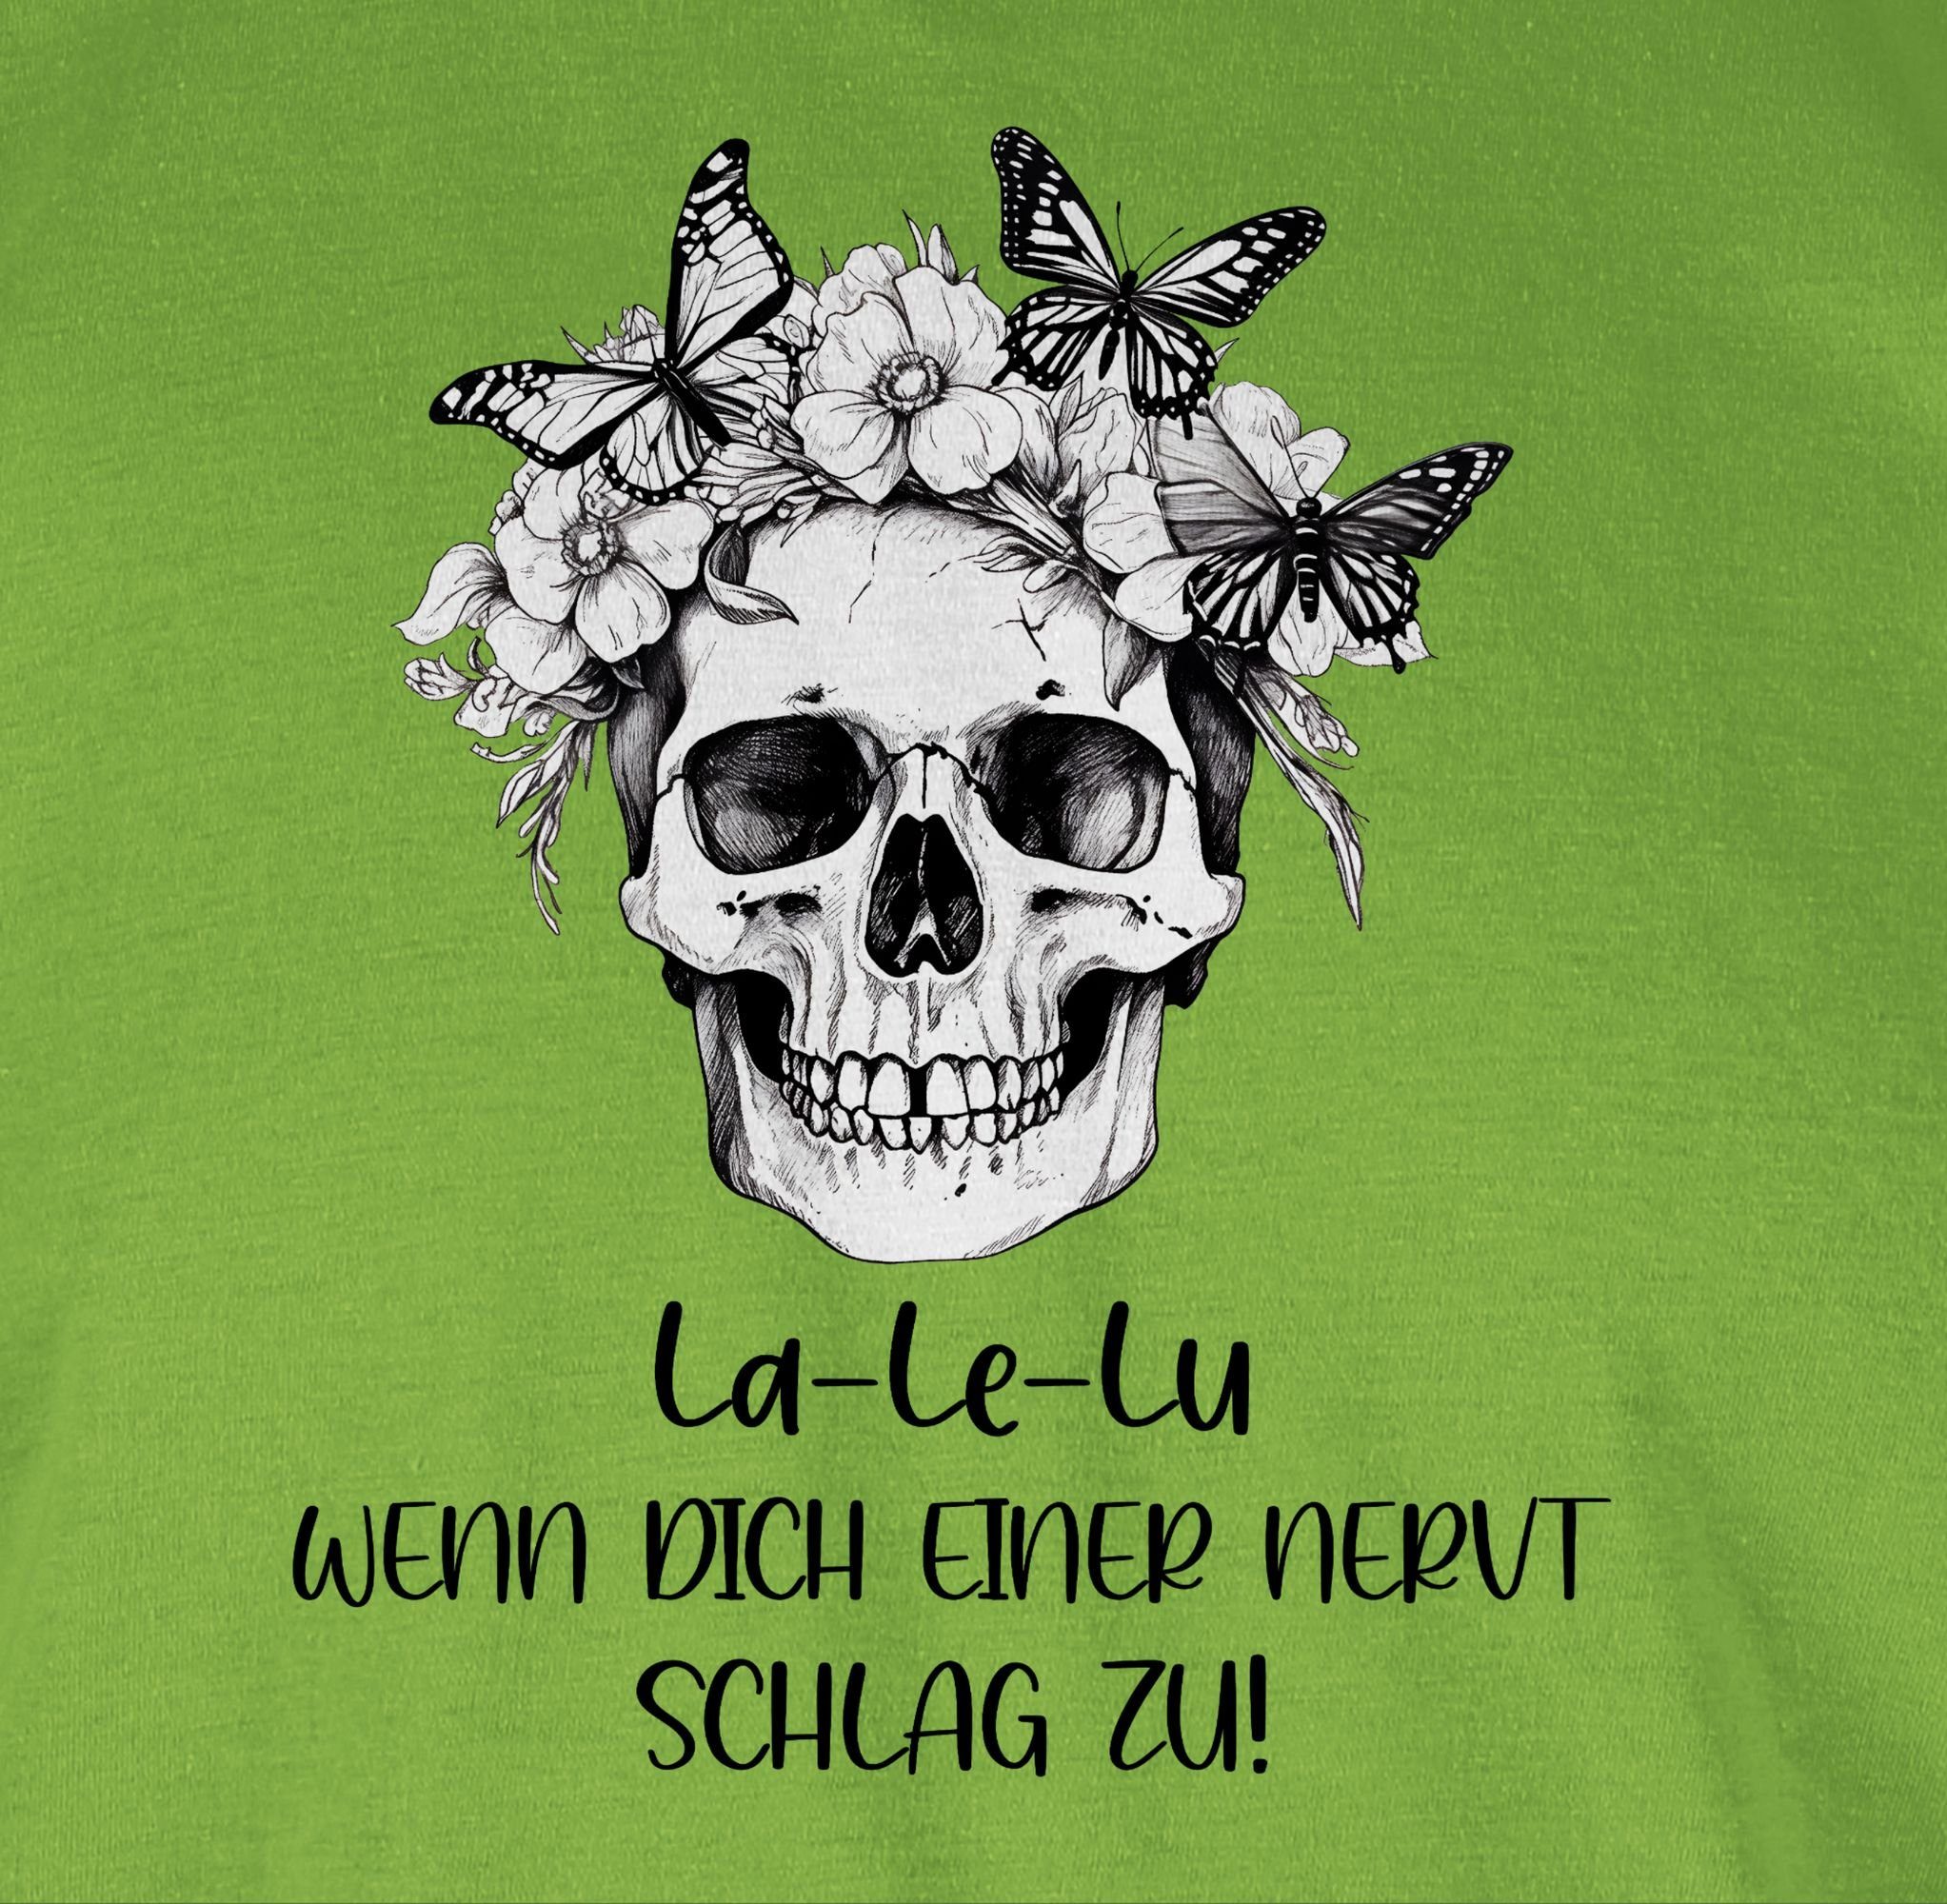 Koll wenn Lu zu La Skull Totenkopf T-Shirt 02 Shirtracer Hellgrün schlag einer nervt Statement Kollegen Le dich